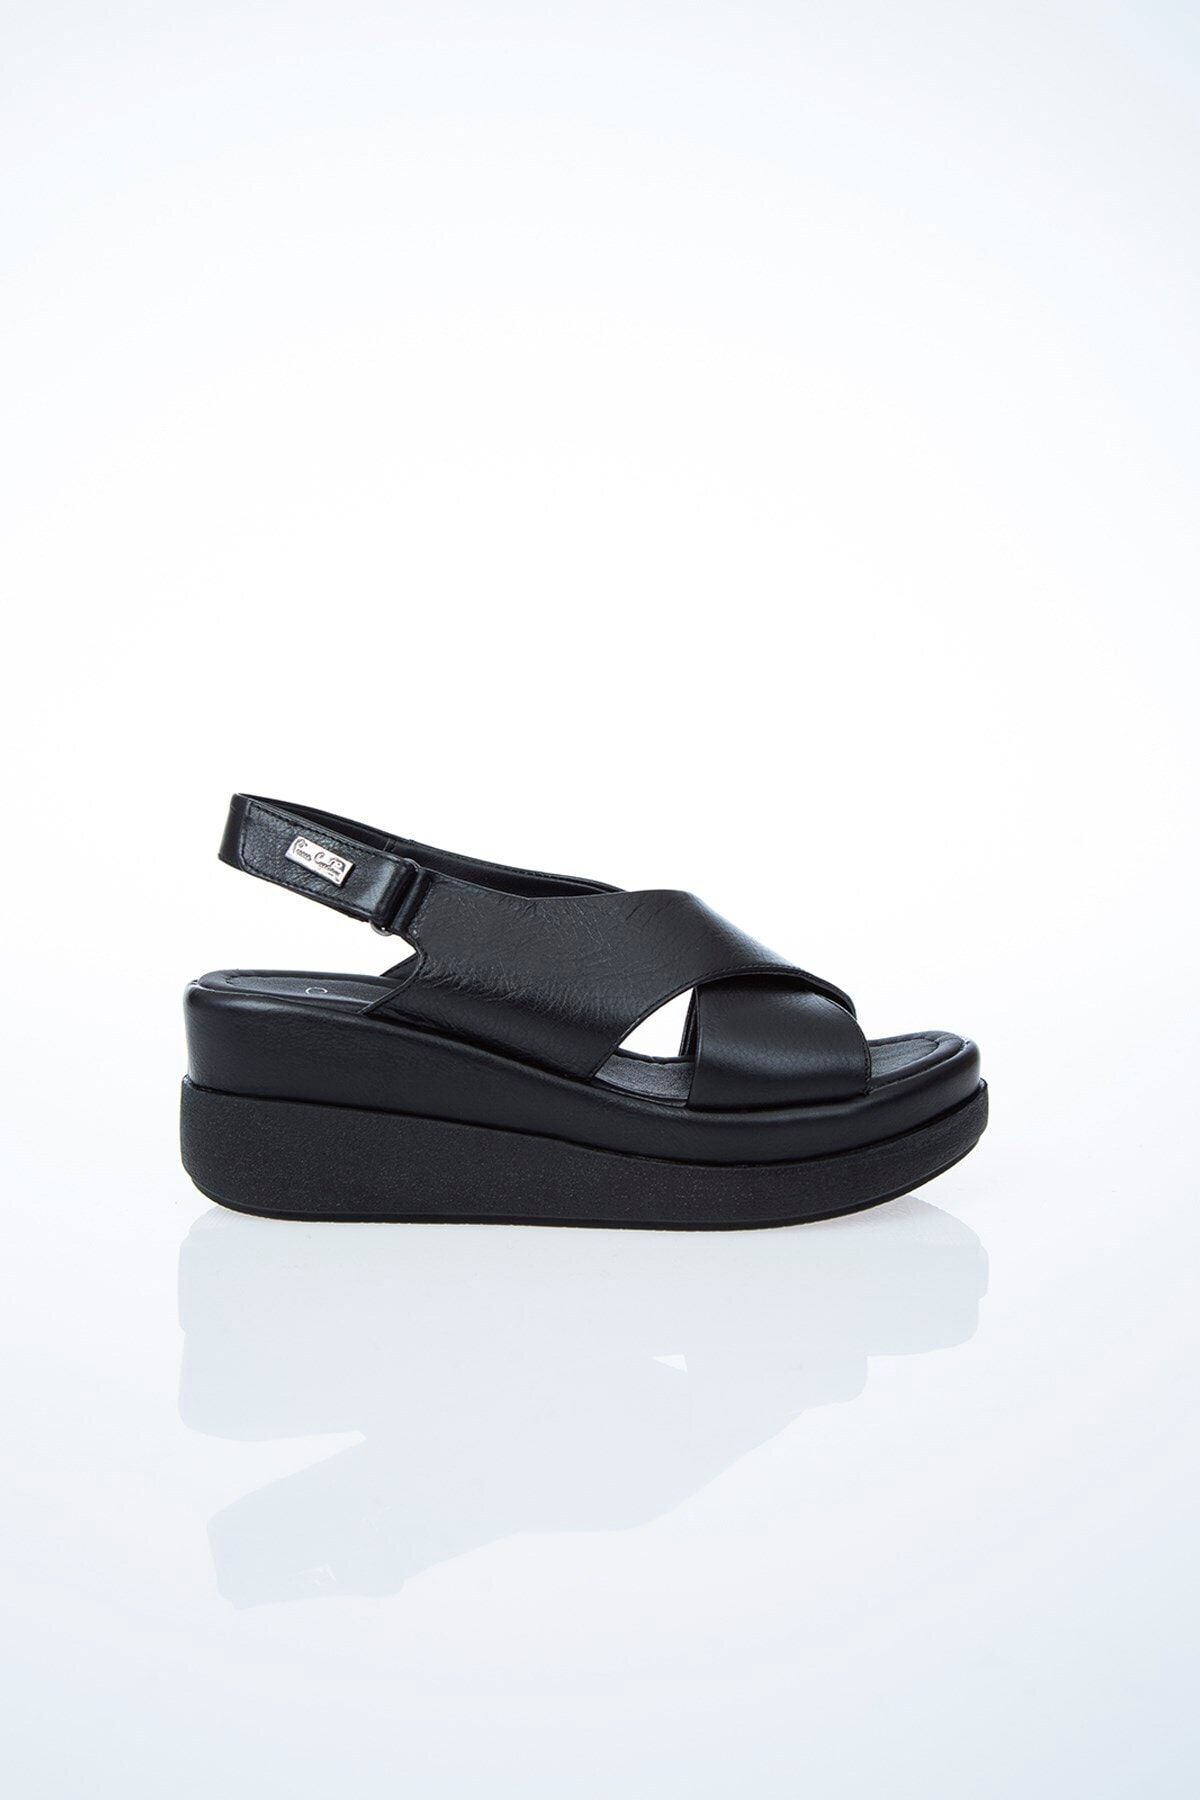 Pierre Cardin Pc-6510 Siyah Kadın Sandalet